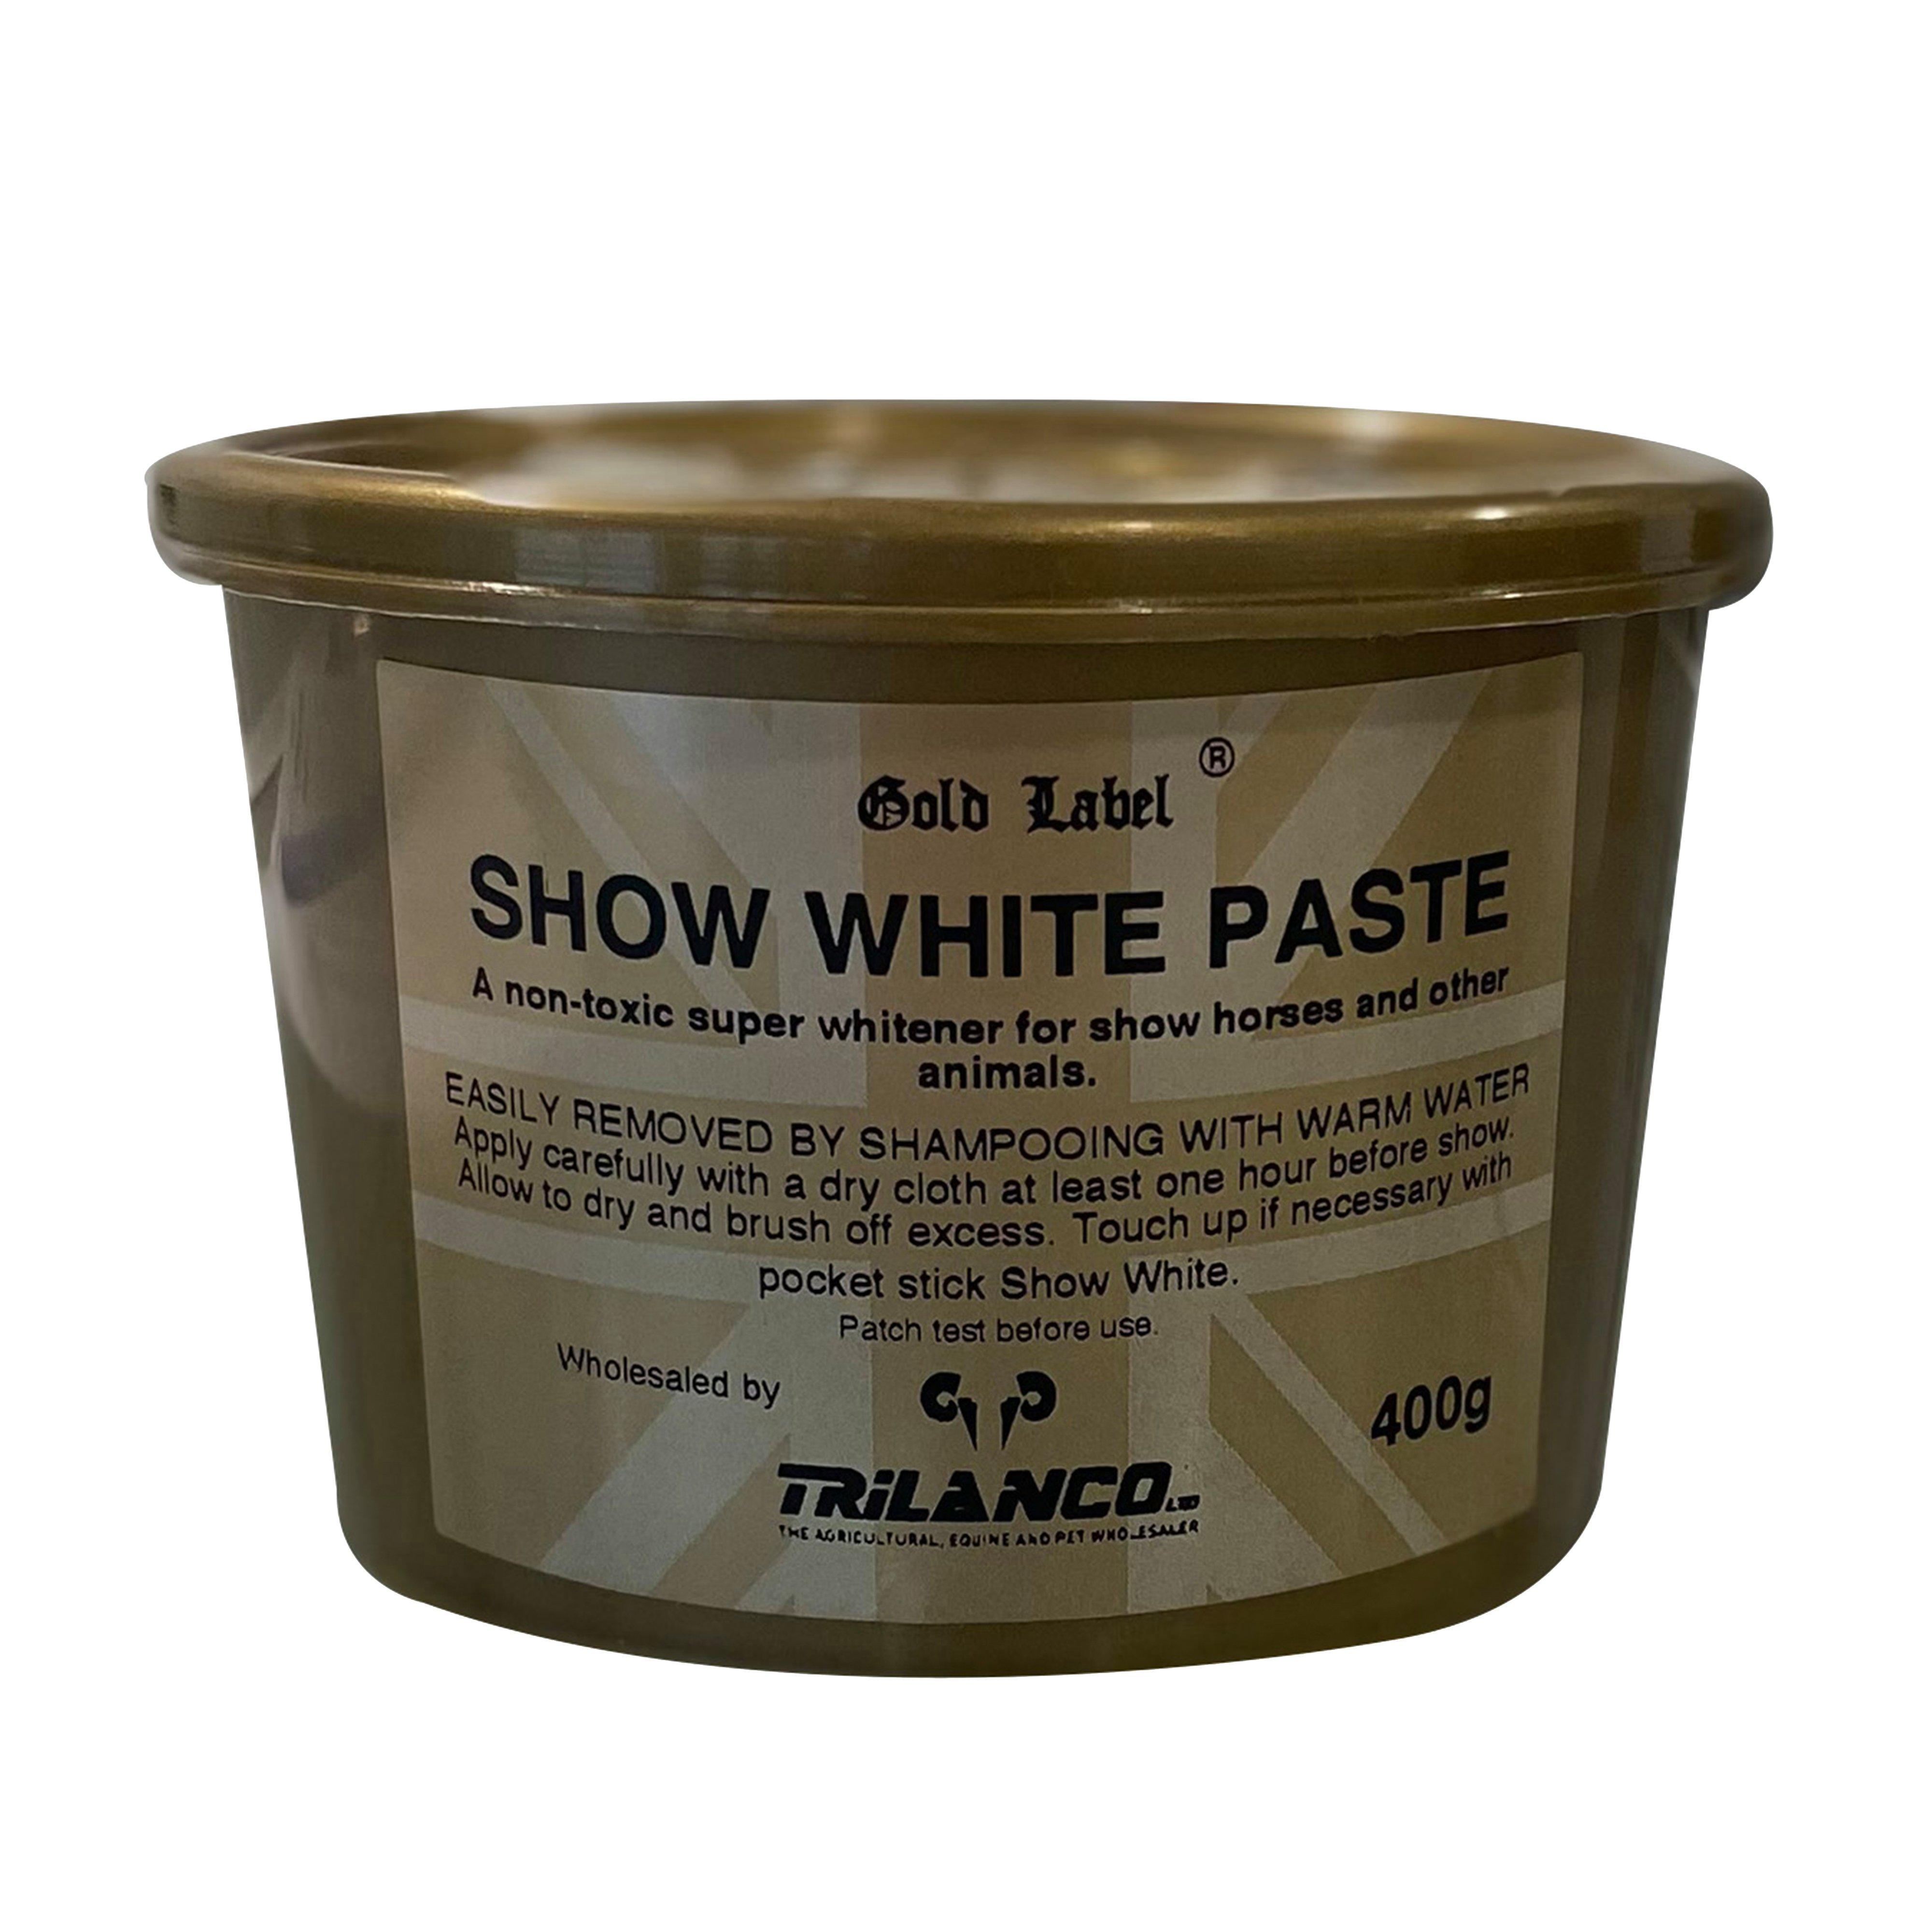 Show White Paste